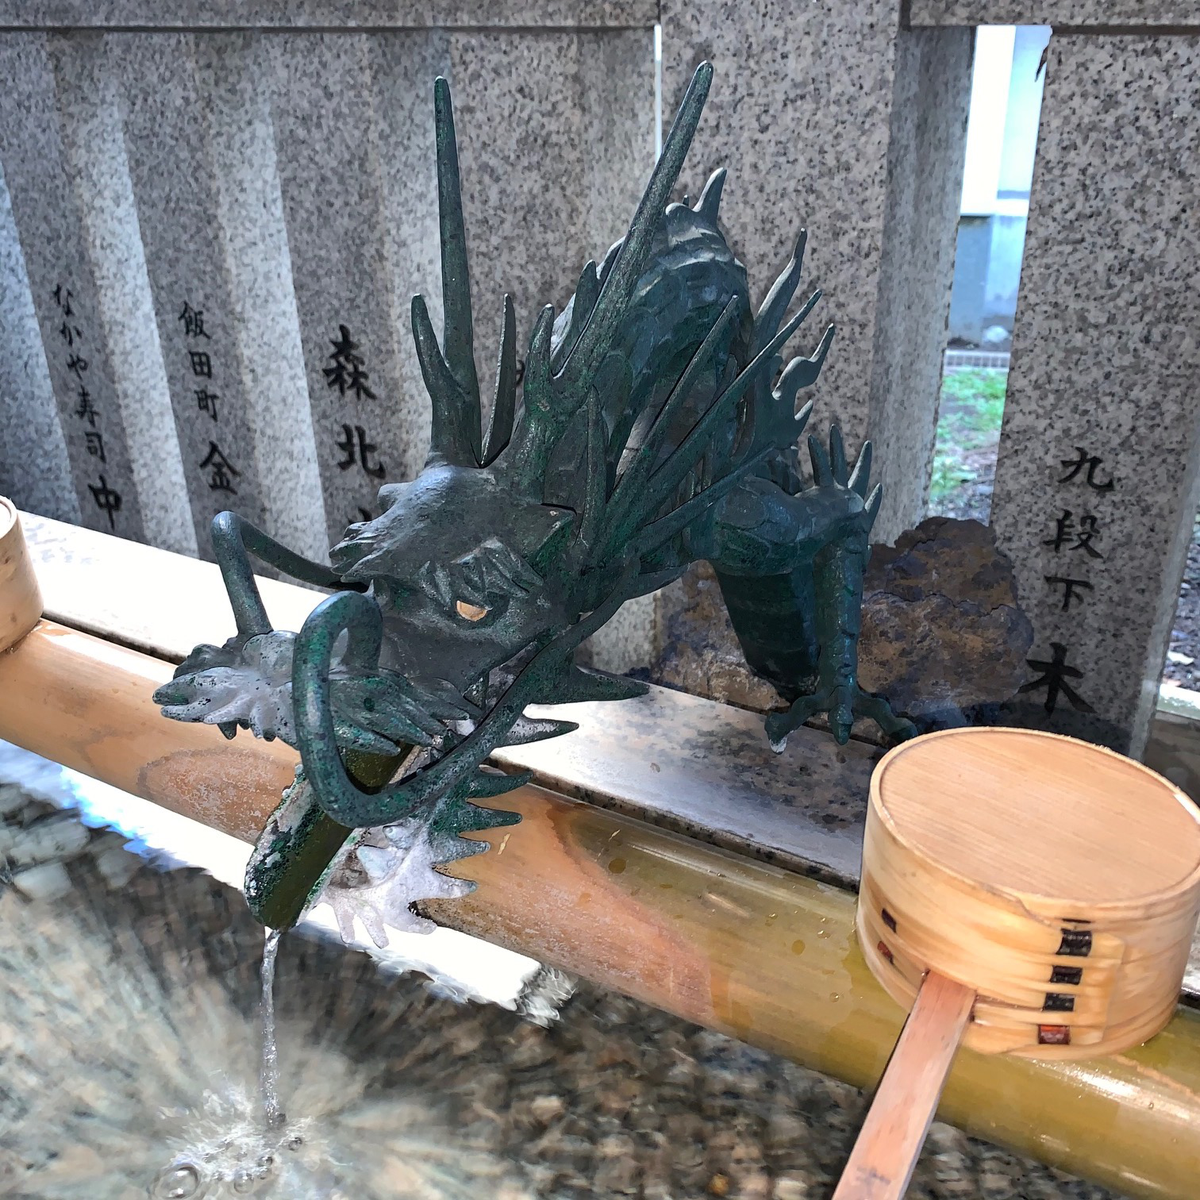 築土神社の手水舎に龍がいた's image 1